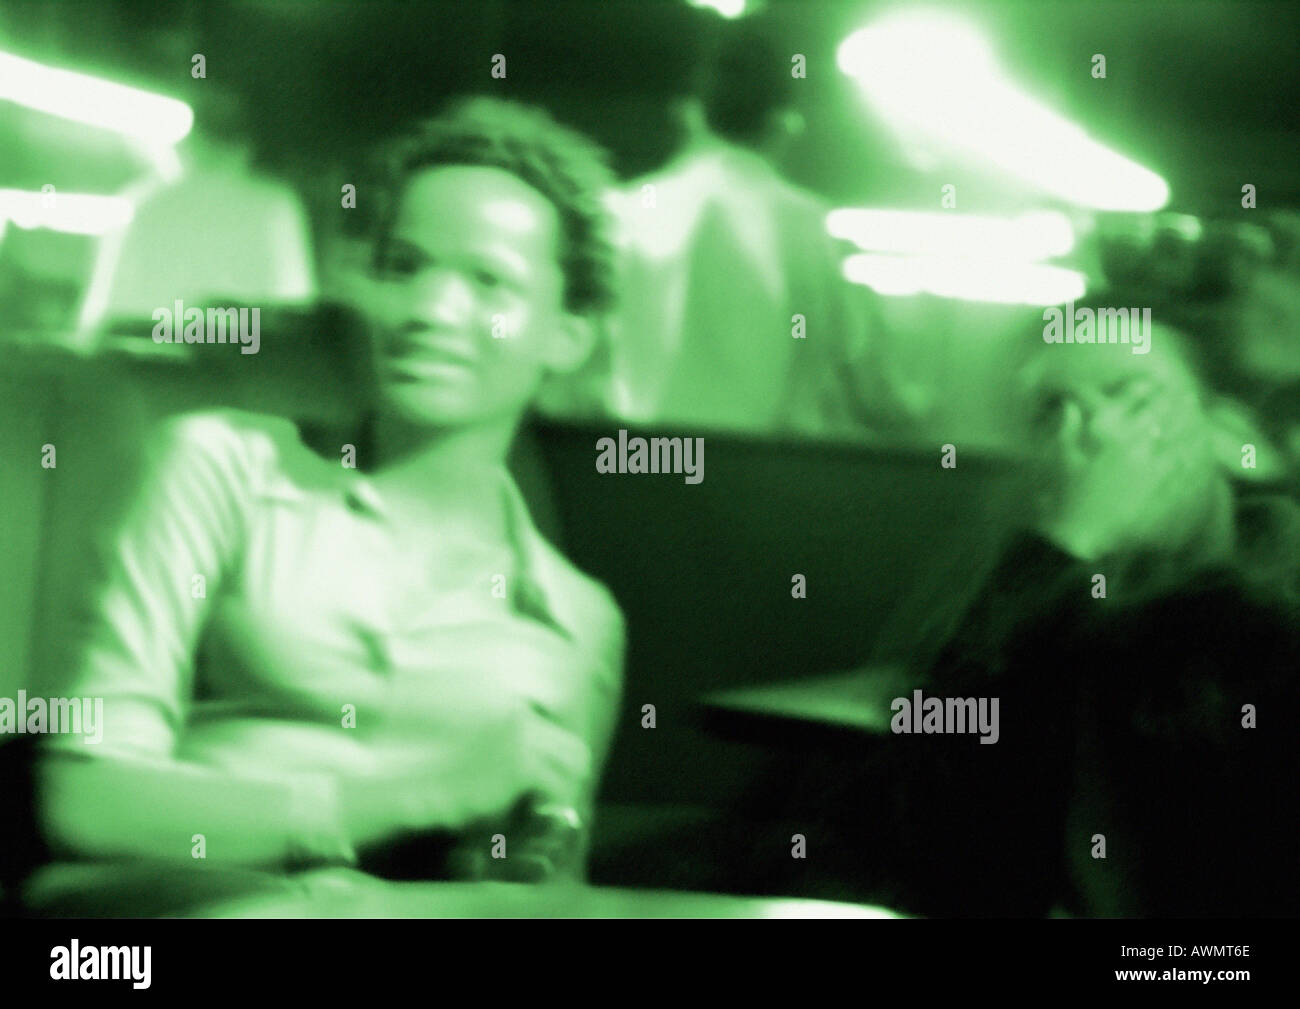 People in nightclub, blurred, green toned Stock Photo